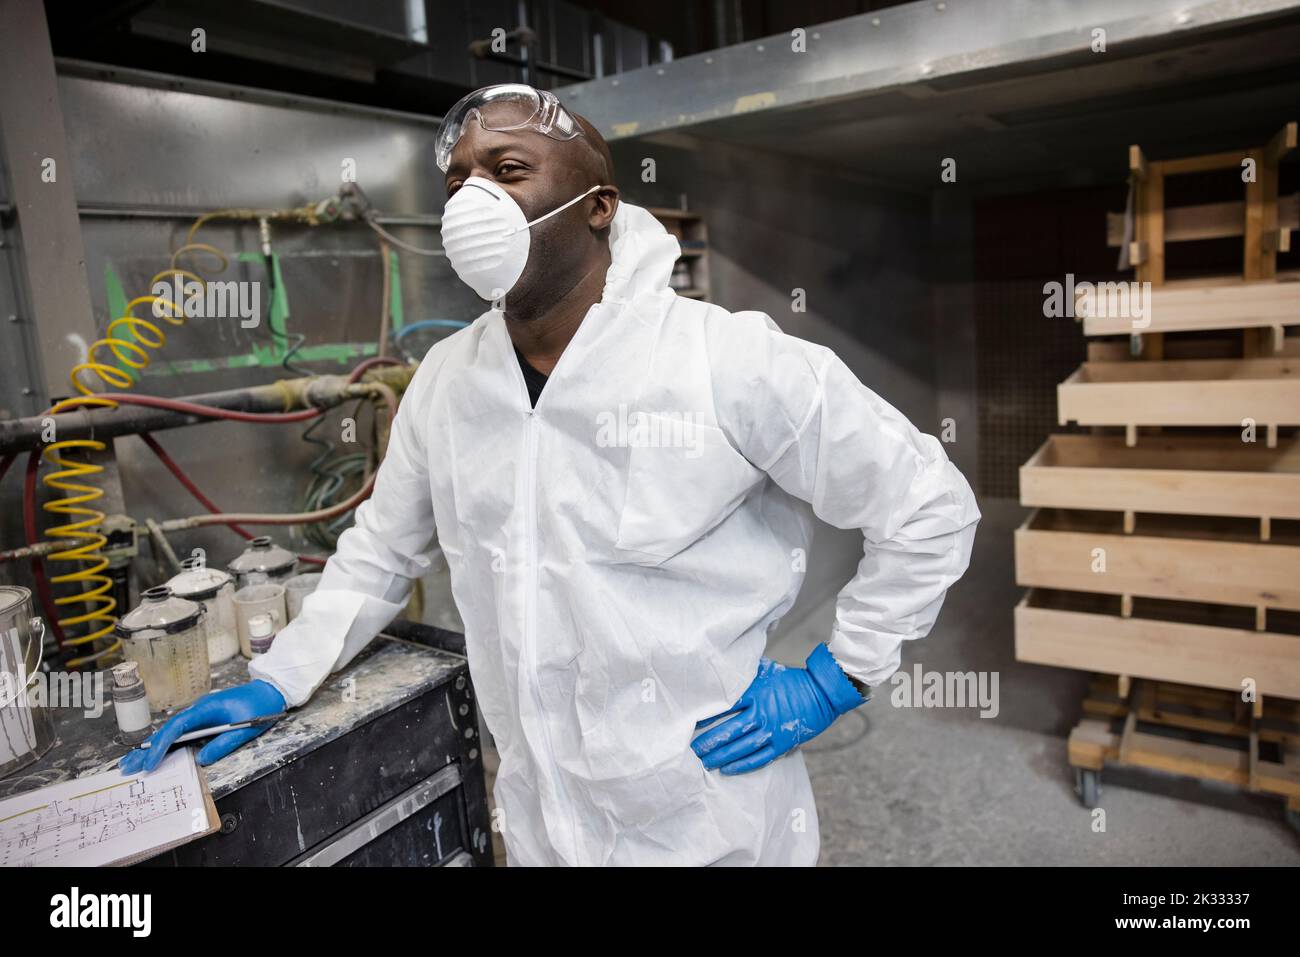 Porträt eines Arbeiters, der in der Werkstatt Schutzkleidung trägt Stockfoto